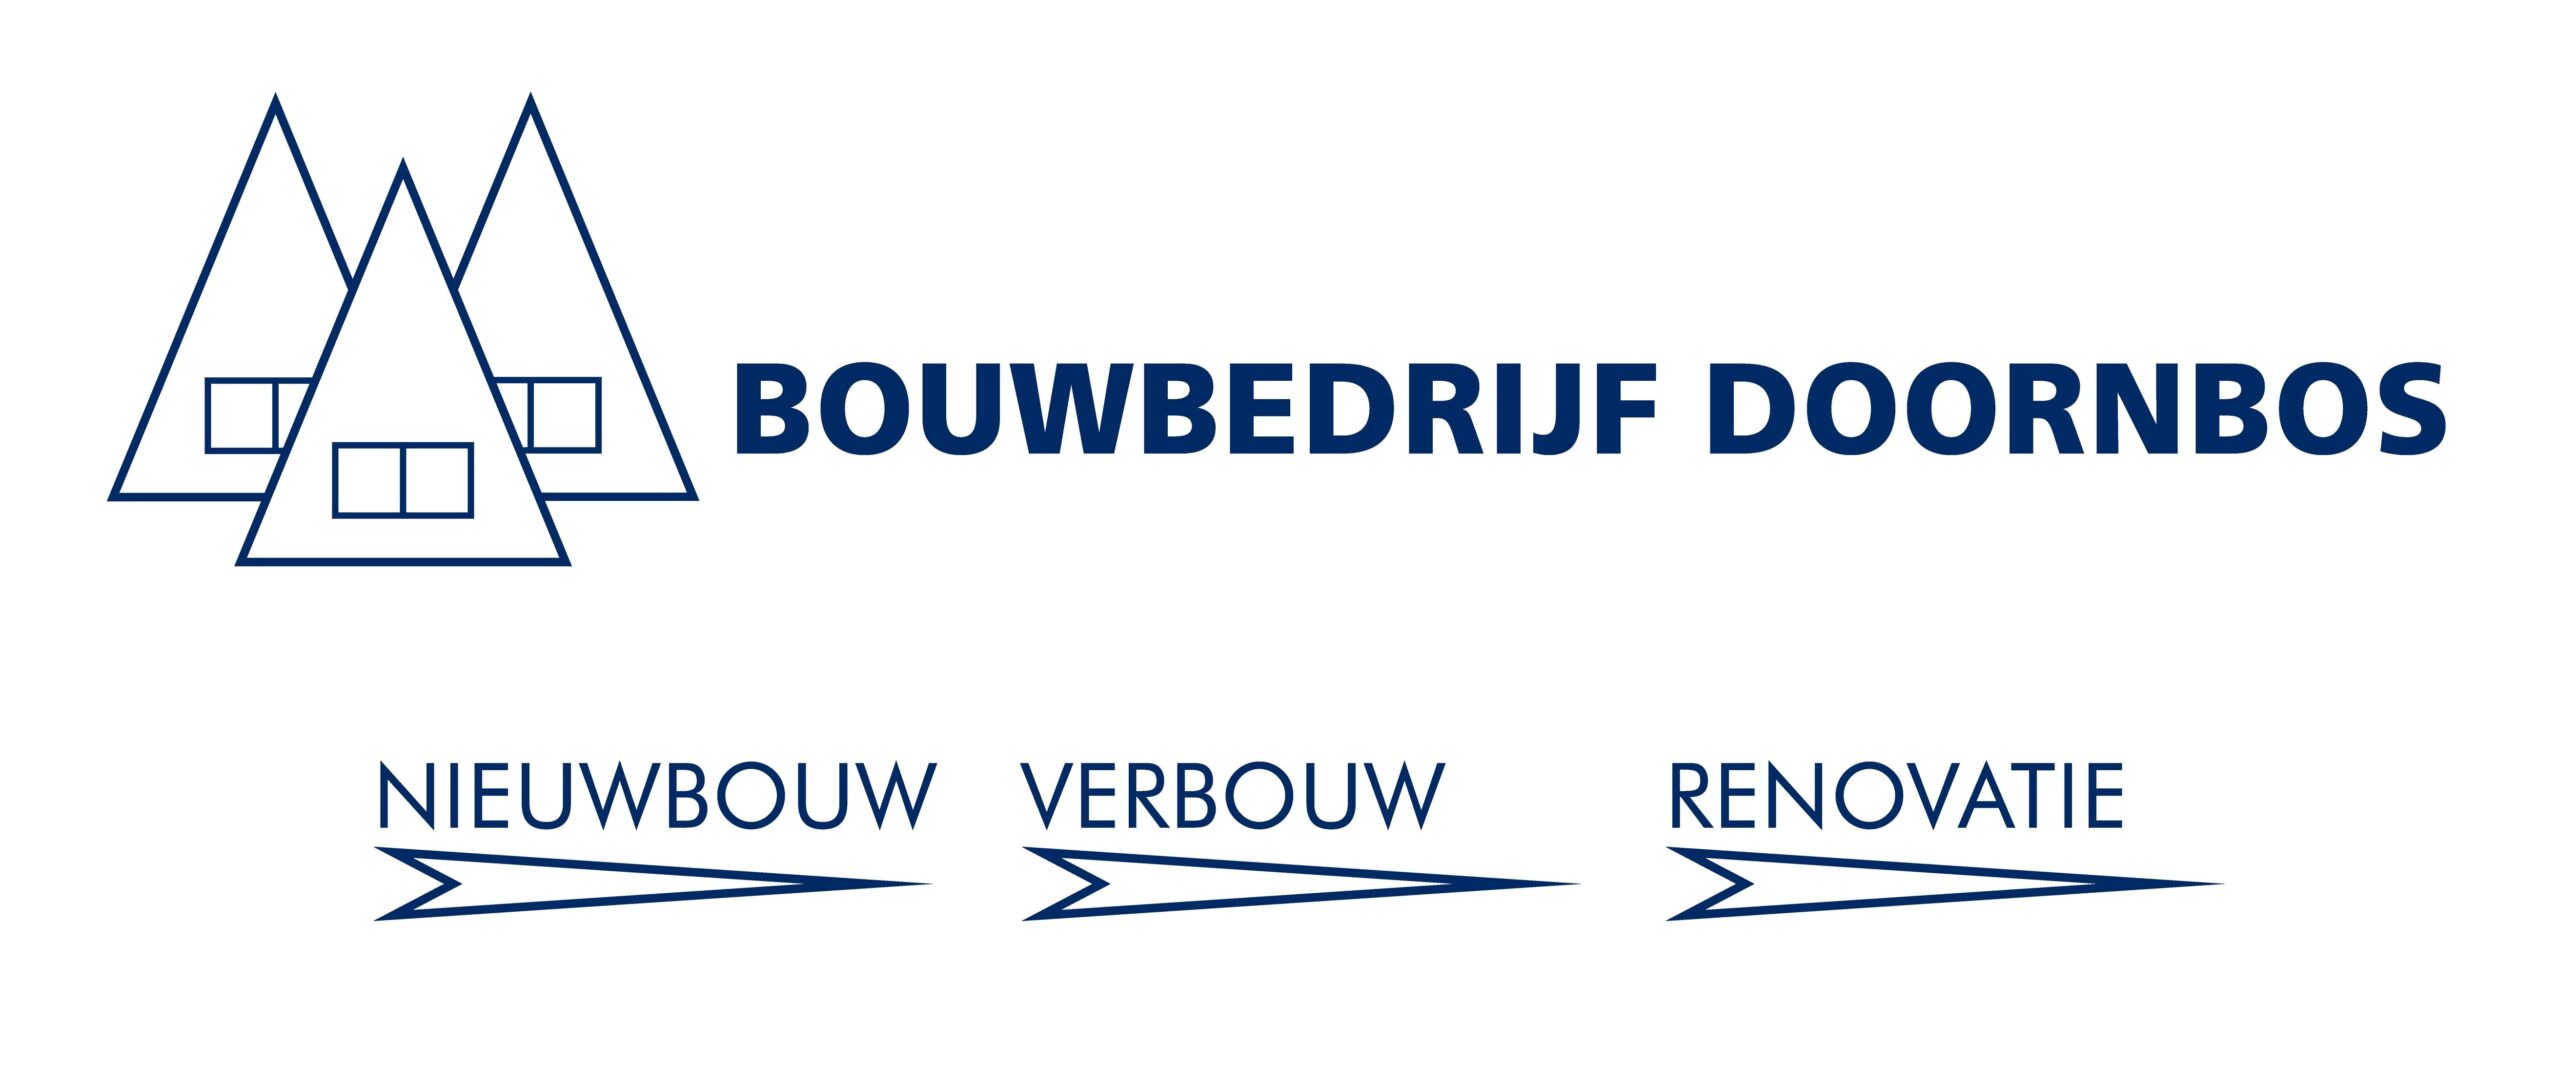 Bouwbedrijf Doornbos - logo